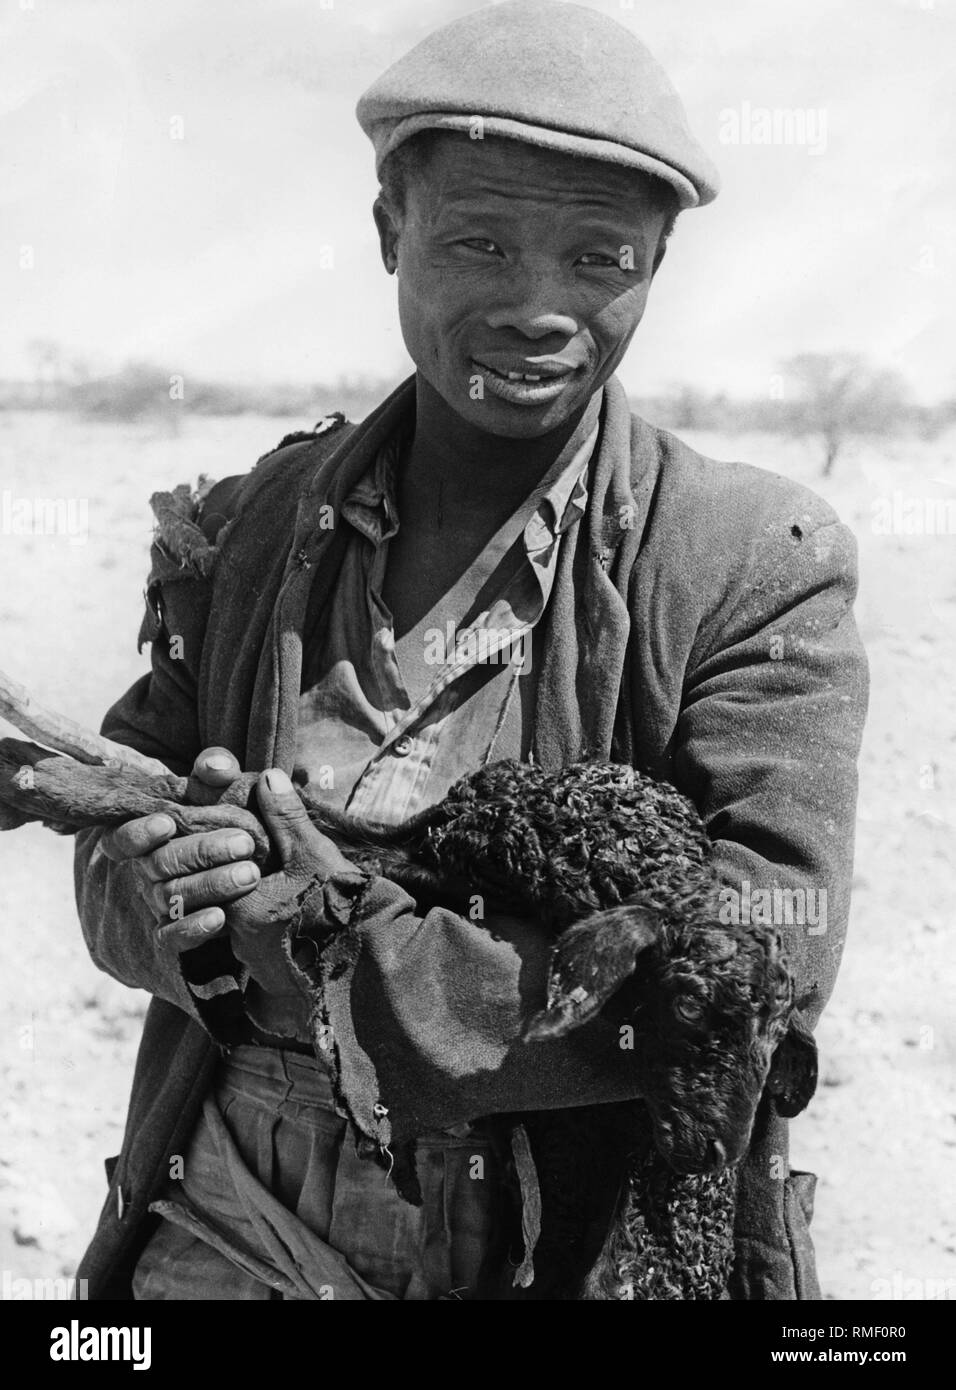 Le Sud-Ouest africain (Namibie) : aujourd'hui : l'image montre un agriculteur avec moutons Karakul. Banque D'Images